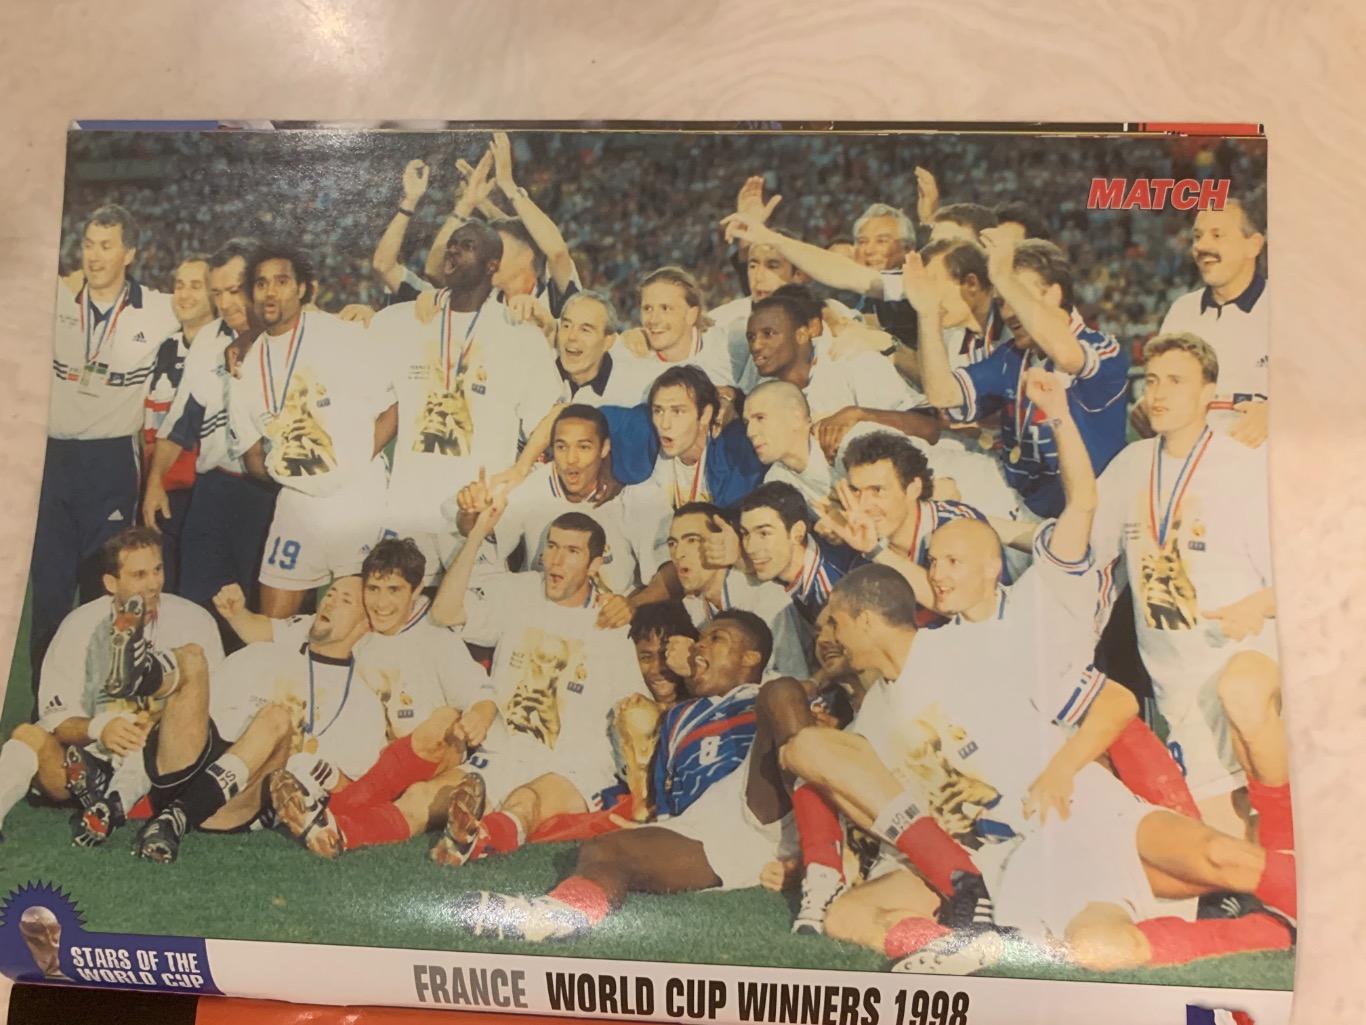 Match чемпионат мира 98- Франция 1